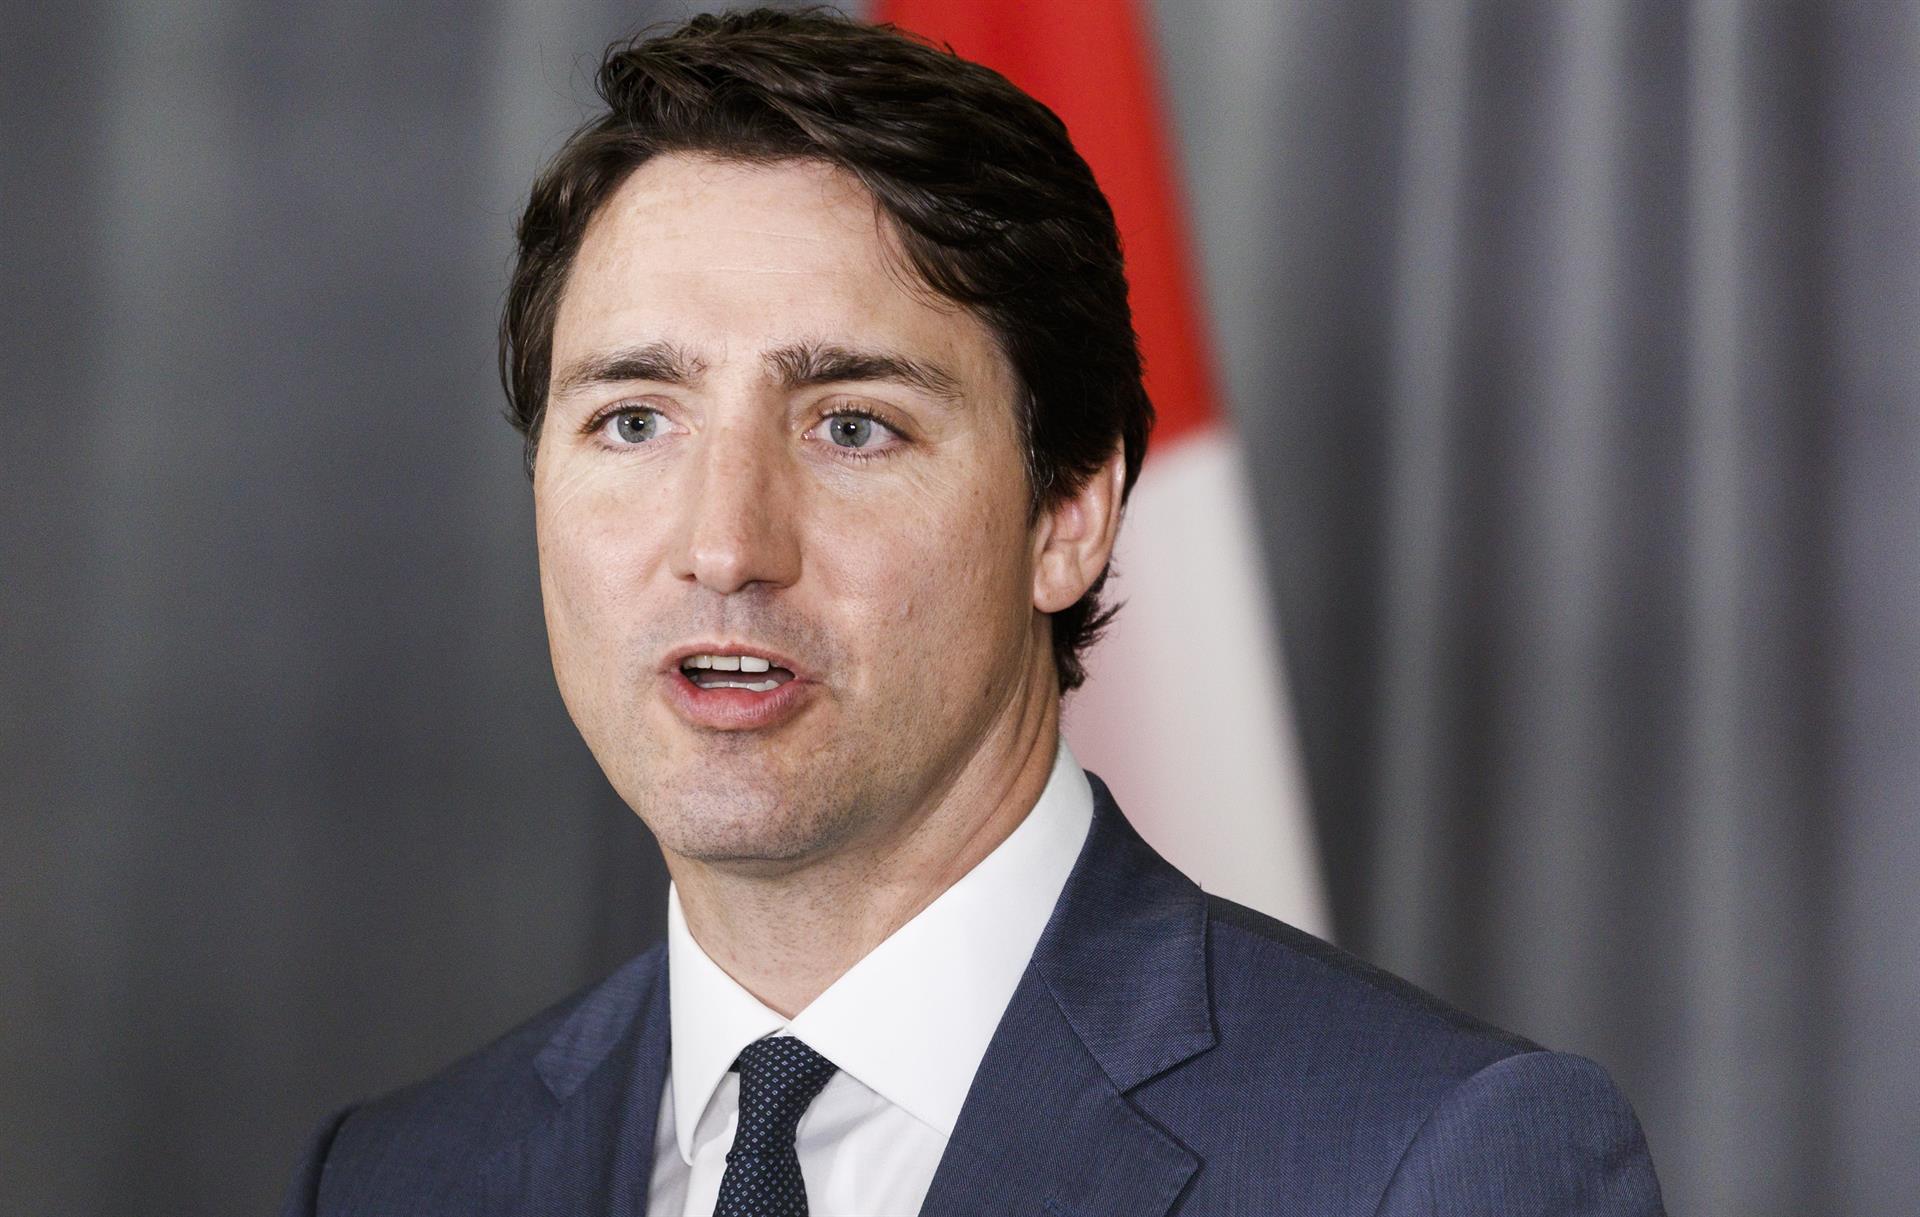 El primer ministro de Canadá Justin Trudeau habla durante una conferencia de prensa en Nueva York (Estados Unidos). Imagen de archivo. EFE/JUSTIN LANE
